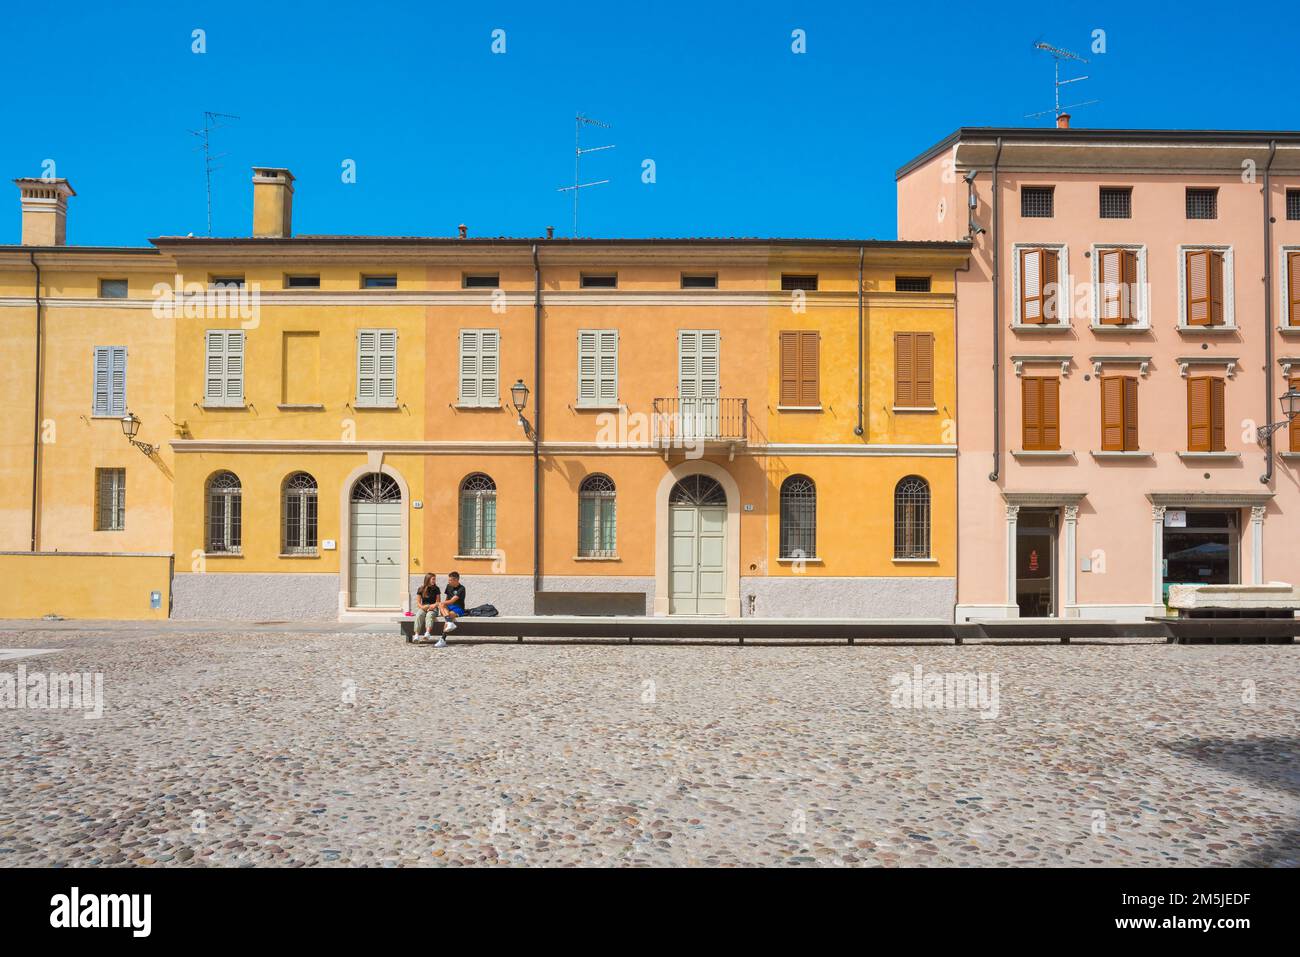 Les jeunes aiment l'Europe d'été, vue de deux jeunes qui parlent comme ils s'assoient seuls dans une place colorée à Mantoue, Lombardie, Italie Banque D'Images